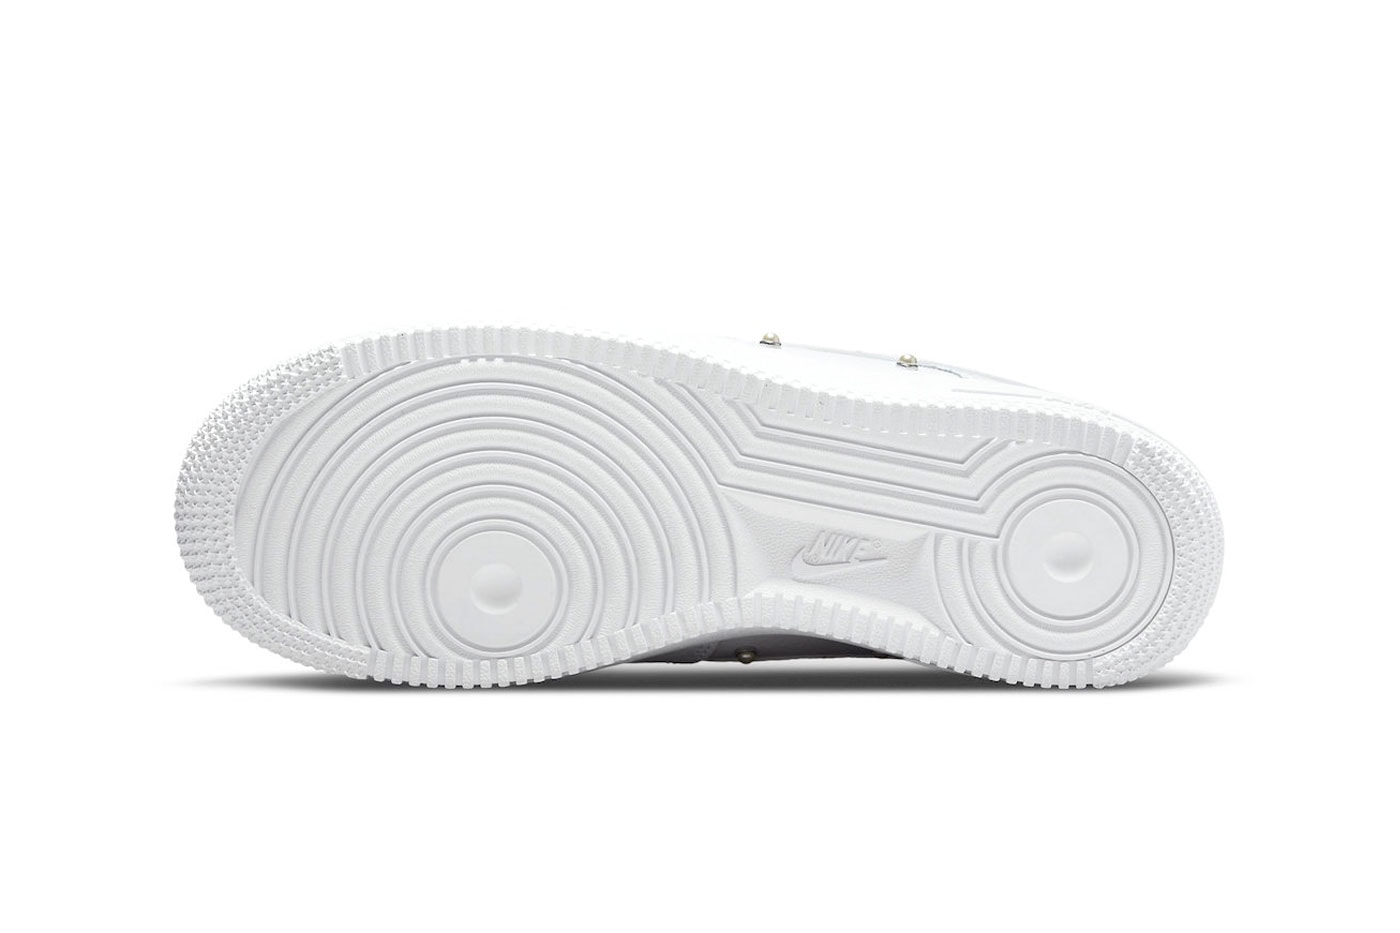 エアフォース1 ローにパールスタッズが施された新作モデルが登場 Nike Air Force 1 Low Pearl Studs DQ0231-100 2022 all white minimalist release date info price